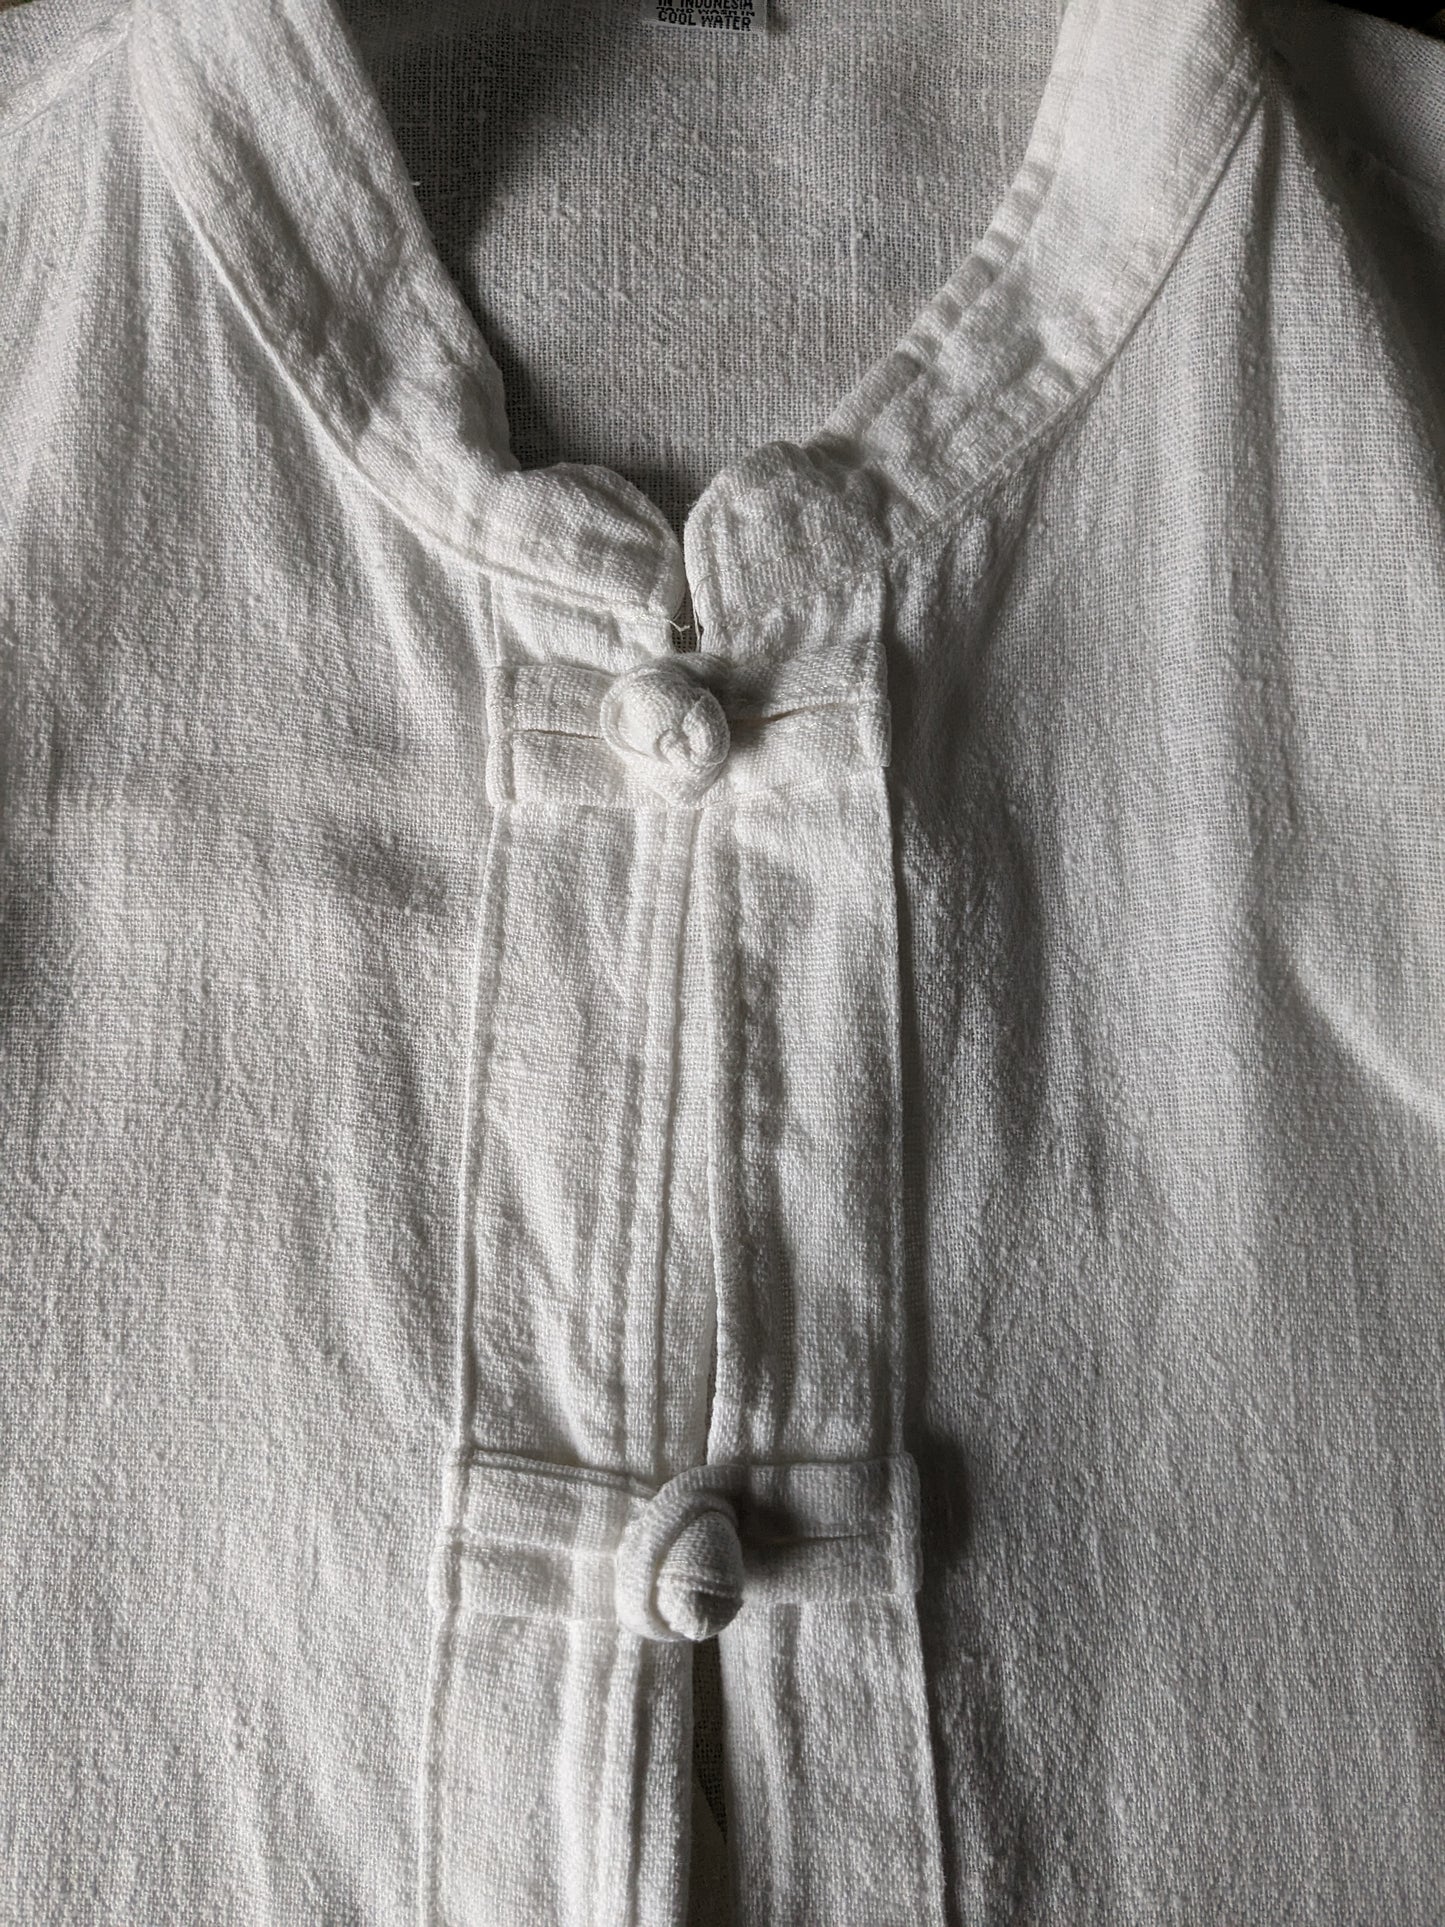 Chemise vintage avec mao / col surélevé. Nœuds et sacs de coton. Taille xl.